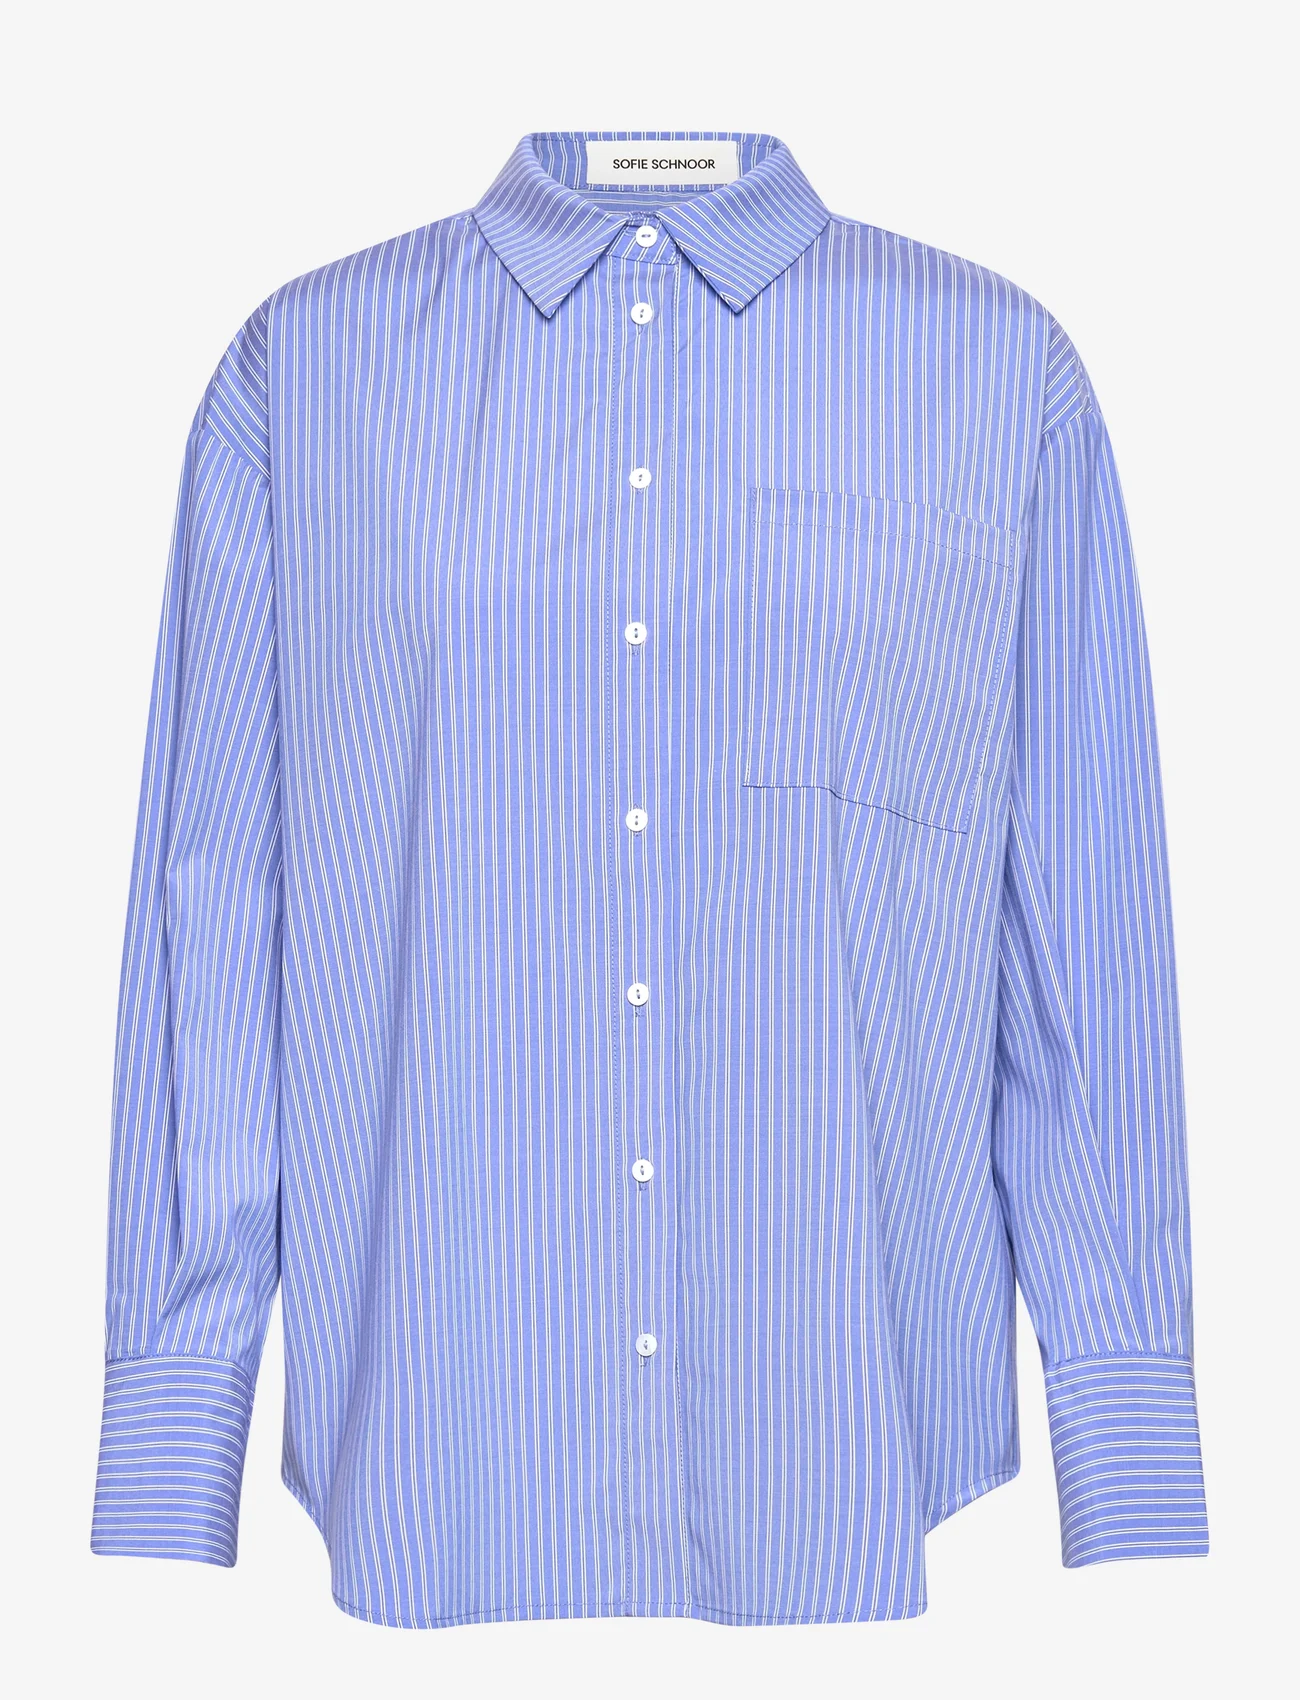 Sofie Schnoor - Shirt - langärmlige hemden - blue striped - 0